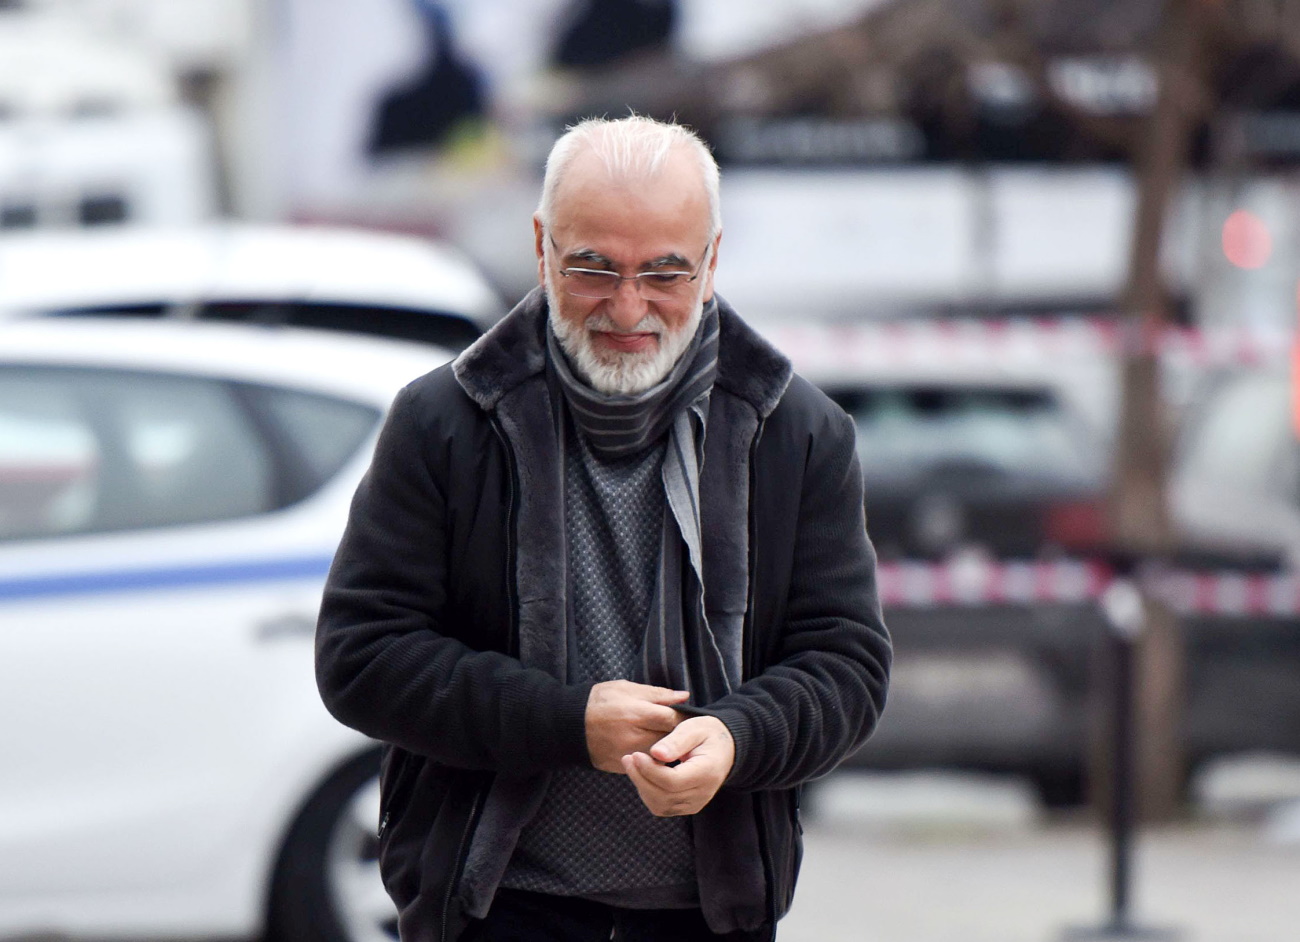 Αθώος ο Ιβάν Σαββίδης για την εισβολή στον αγωνιστικό χώρο στο ΠΑΟΚ – ΑΕΚ αλλά ένοχος για το όπλο